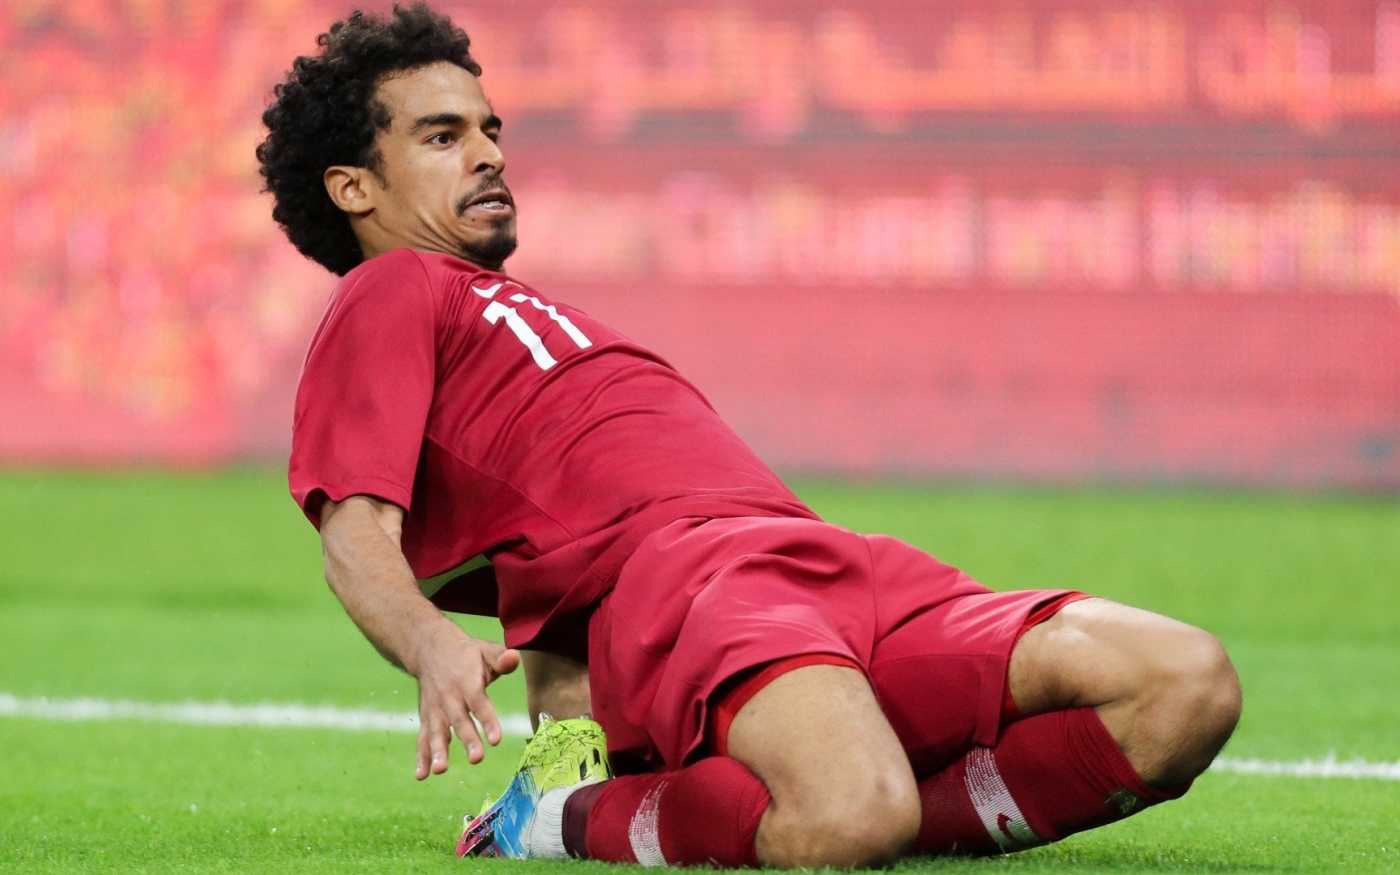 L’attaquant qatari Akram Afif célèbre un but inscrit contre les Émirats arabes unis à l’occasion d’un match comptant pour le groupe A de la 24e Coupe du Golfe des nations, le 2 décembre 2019 au Khalifa International Stadium de Doha (AFP)